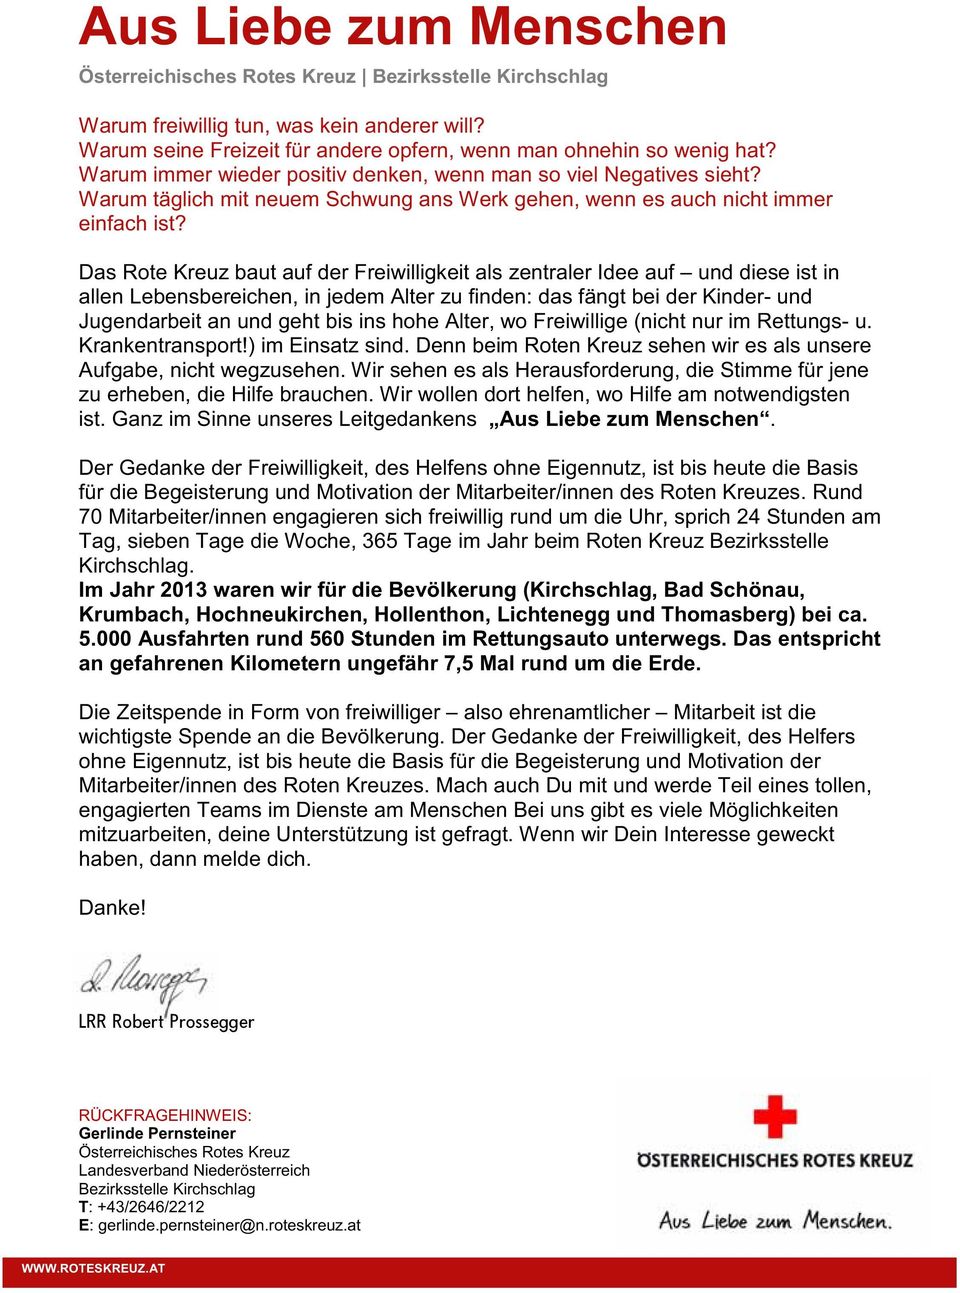 Das Rote Kreuz baut auf der Freiwilligkeit als zentraler Idee auf und diese ist in allen Lebensbereichen, in jedem Alter zu finden: das fängt bei der Kinder- und Jugendarbeit an und geht bis ins hohe